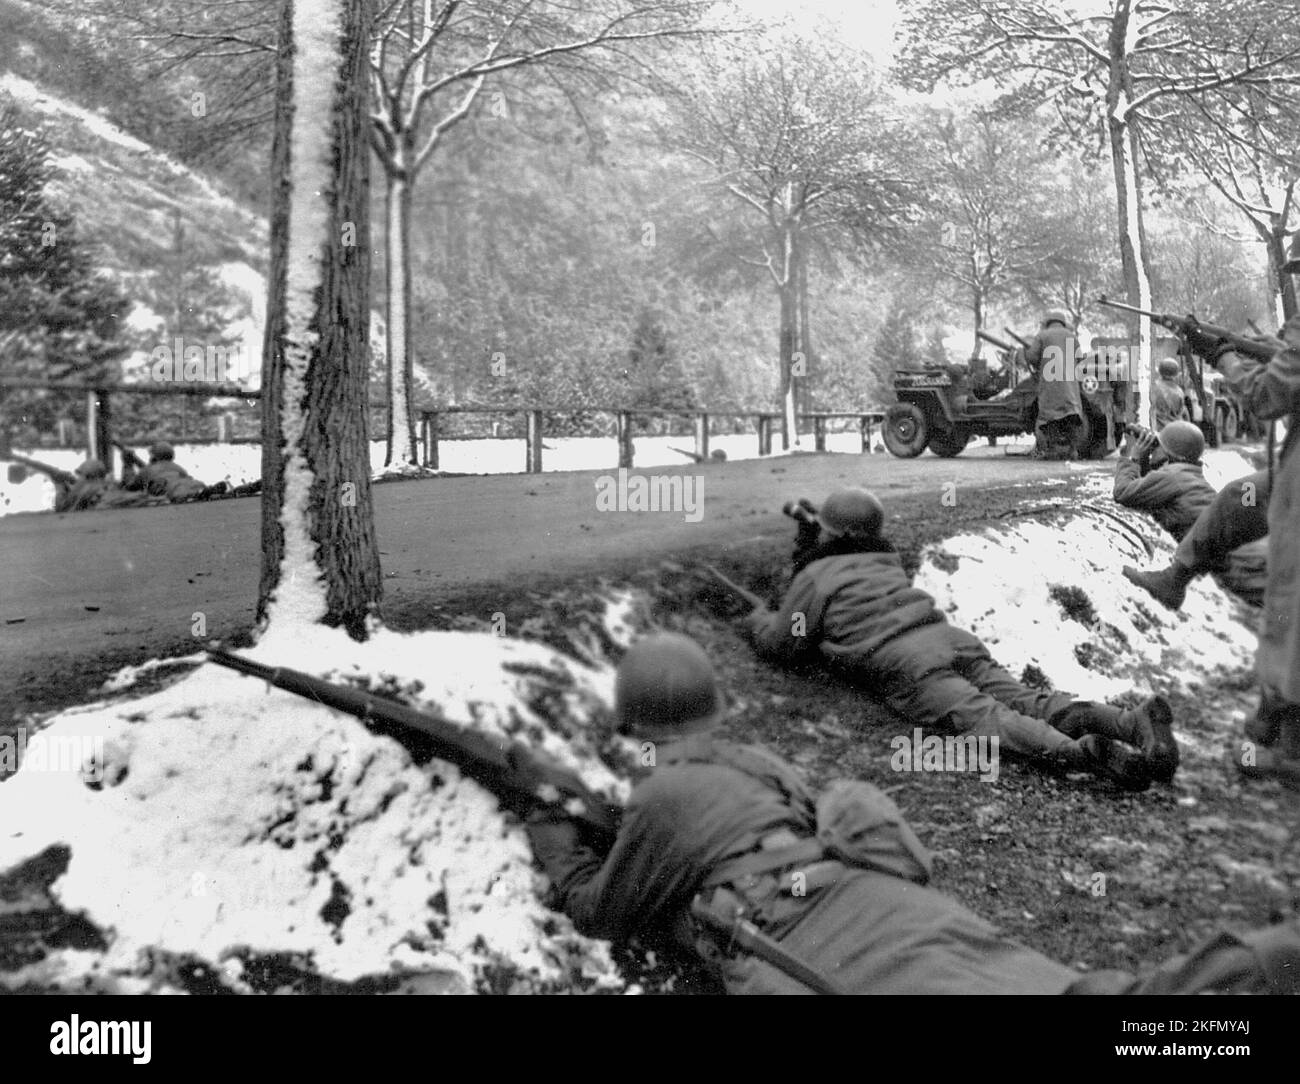 ARDENNES, BELGIQUE - décembre 1944 - des soldats de l'armée américaine traversent la région belge des Ardennes lors de la contre-attaque sanglante des Allemands Banque D'Images